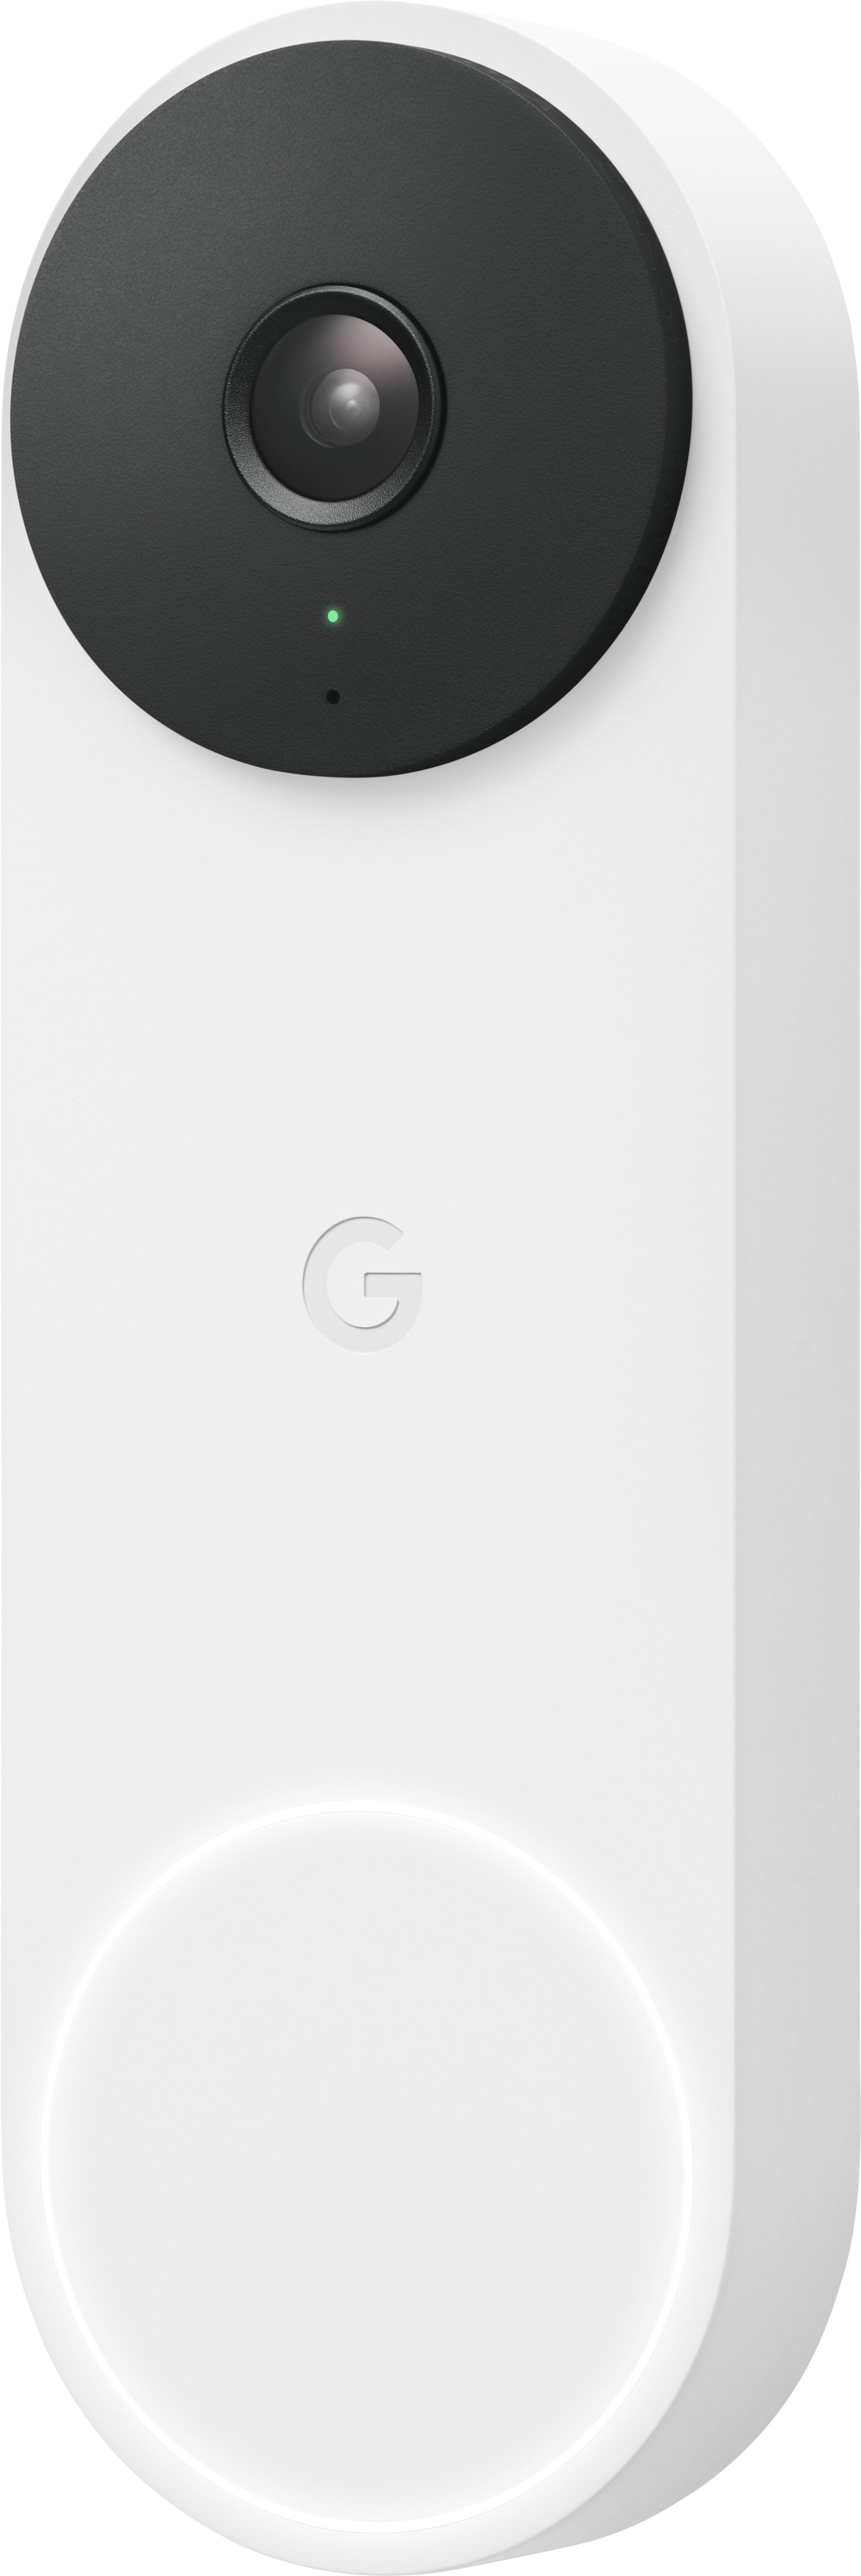 Google Nest Doorbell 2nd Gen Wired